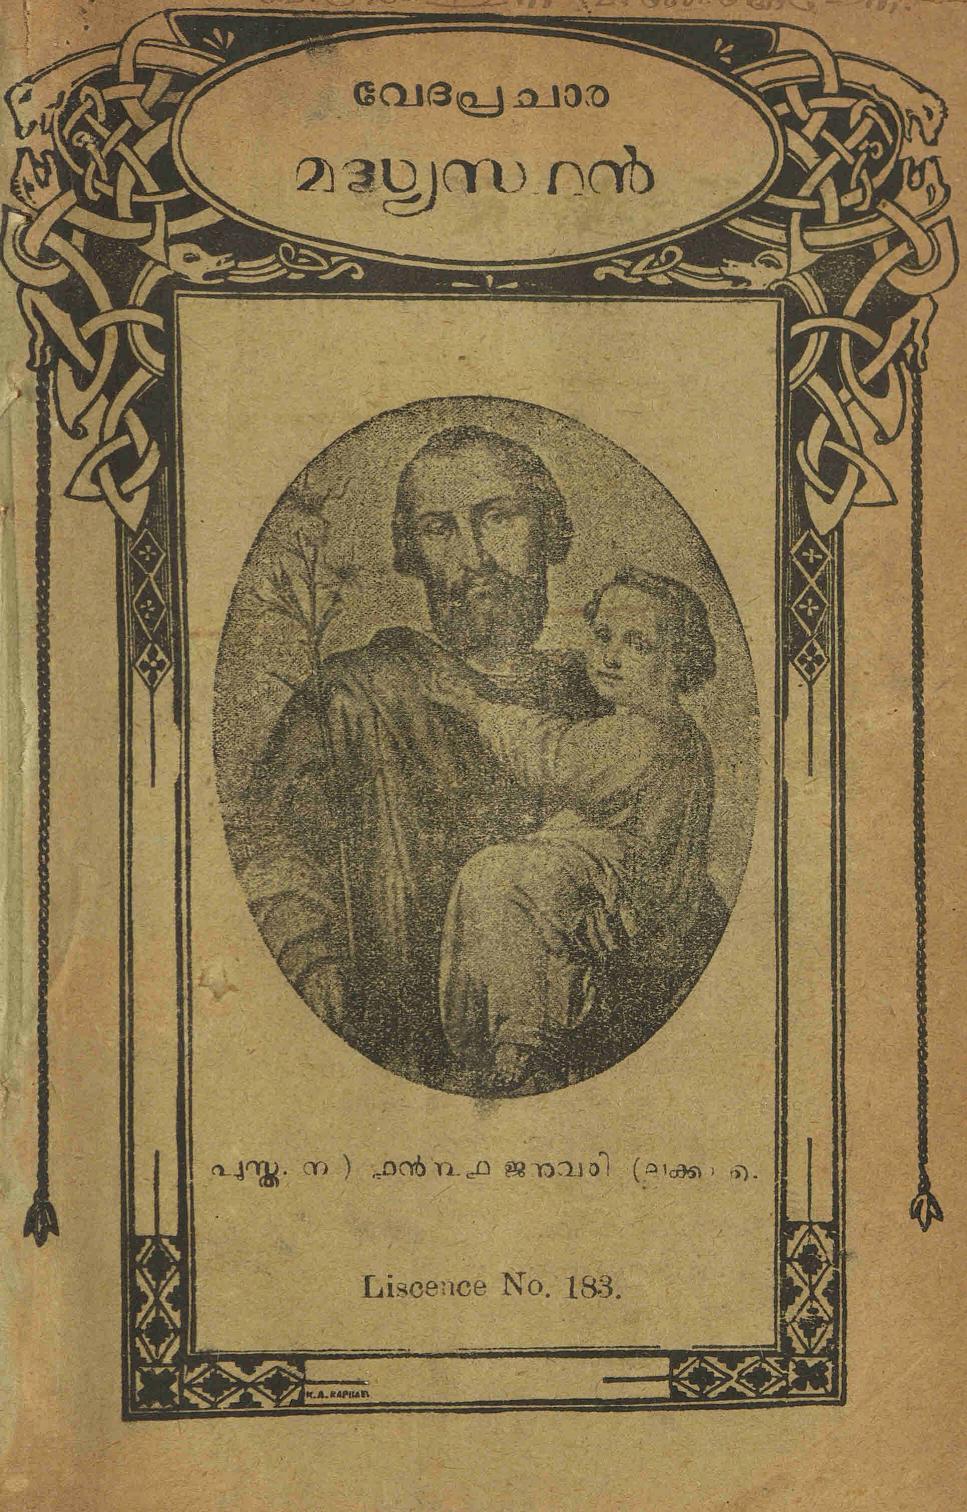 1931 - വേദപ്രചാര മദ്ധ്യസ്ഥൻ മാസികയുടെ നാലു ലക്കങ്ങൾ